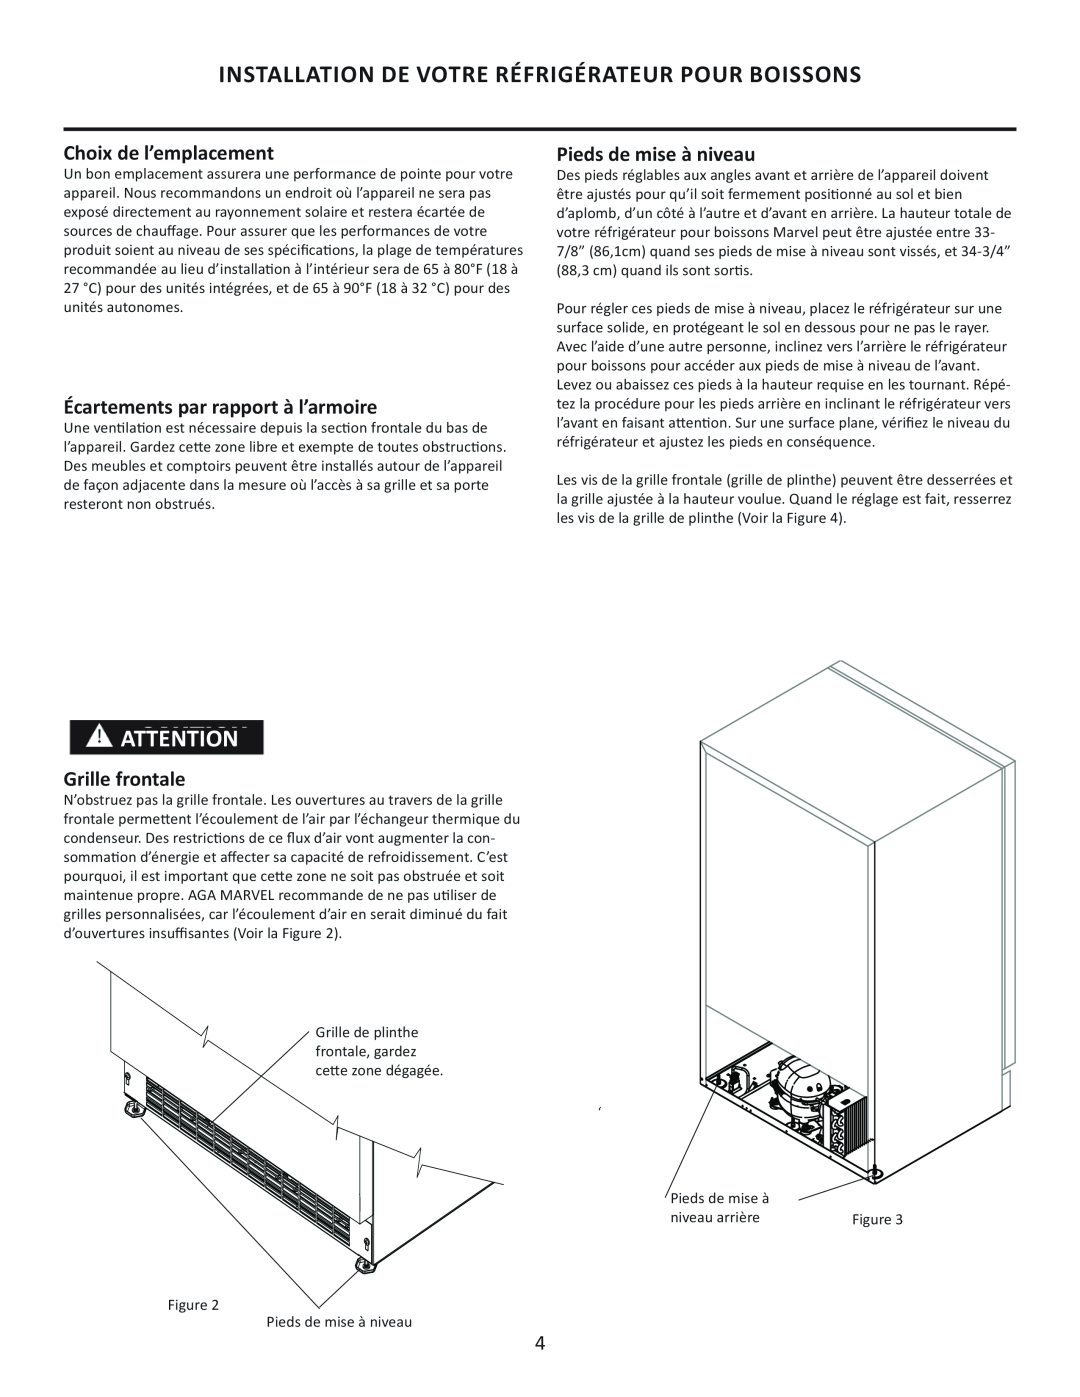 Marvel Group 6GARM manual Installation De Votre Réfrigérateur Pour Boissons, Choix de l’emplacement, Pieds de mise à niveau 